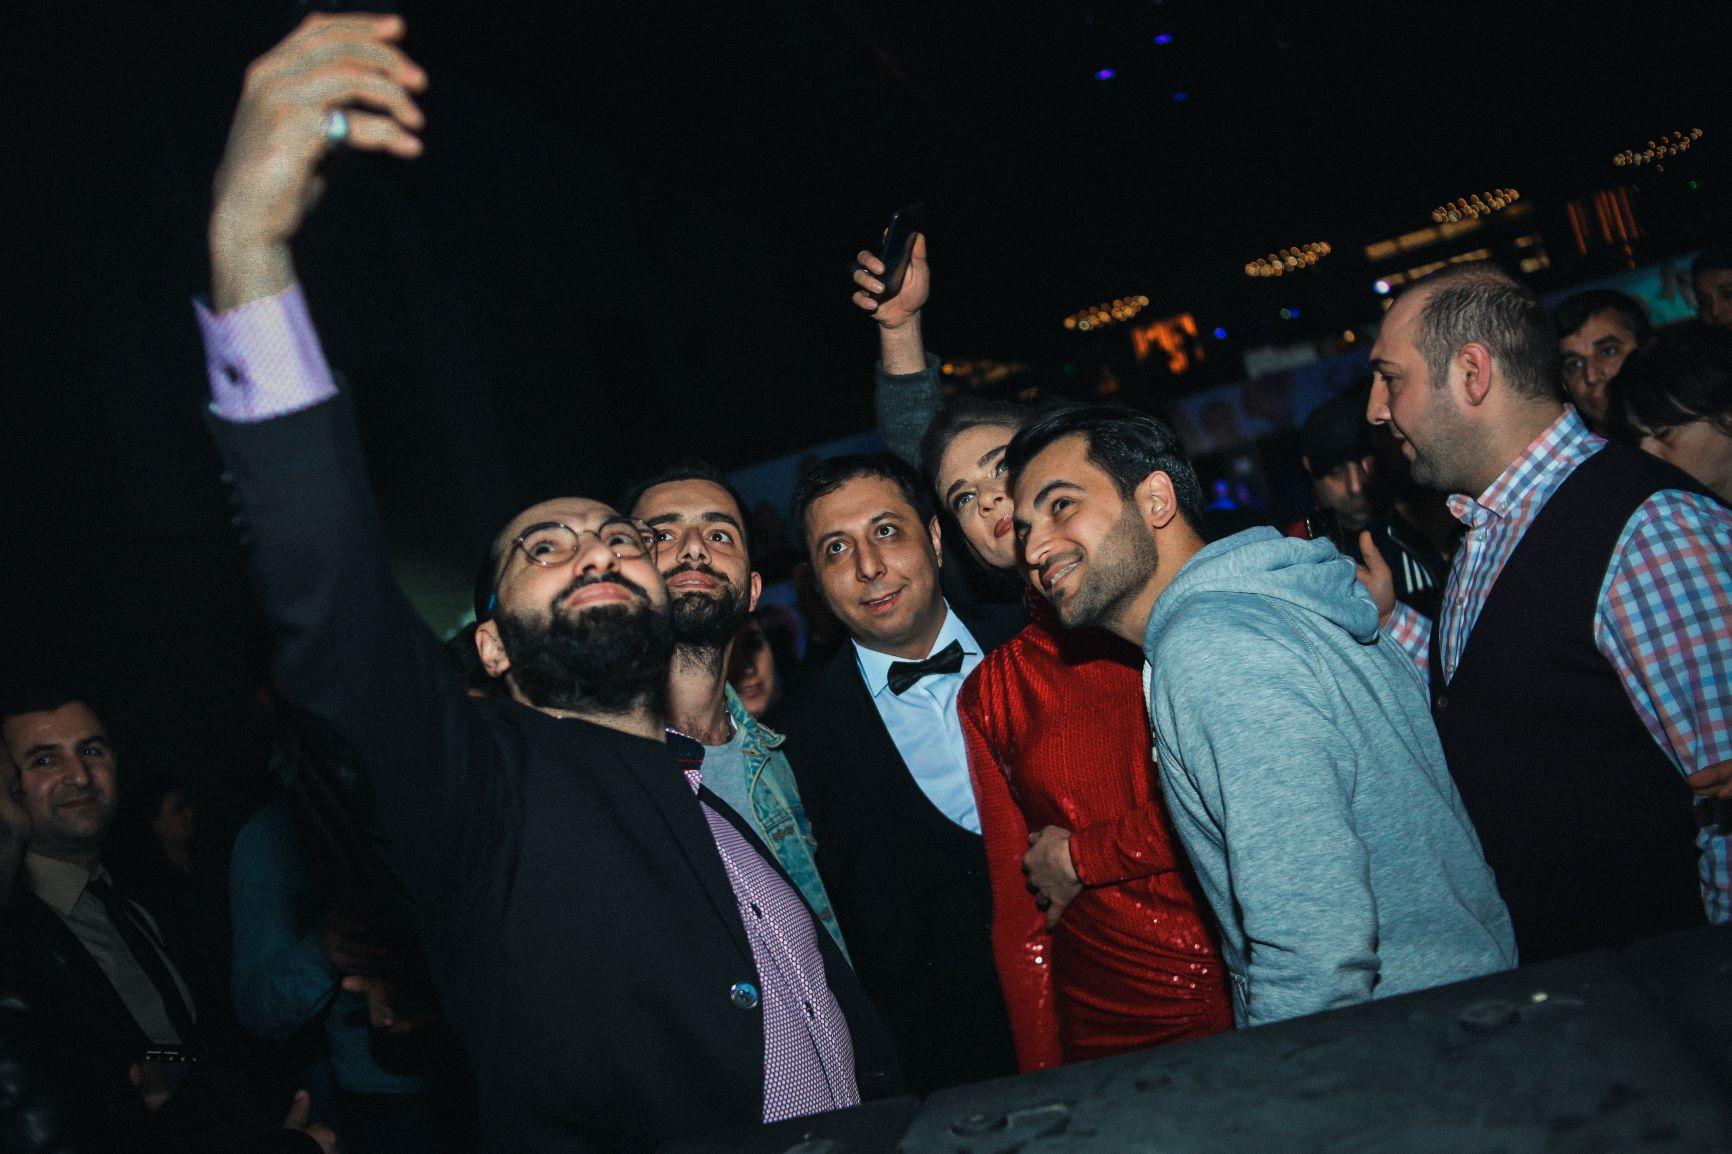 Турецкие красавицы в окружении азербайджанцев, или Потрескавшаяся любовь (ВИДЕО, ФОТО)